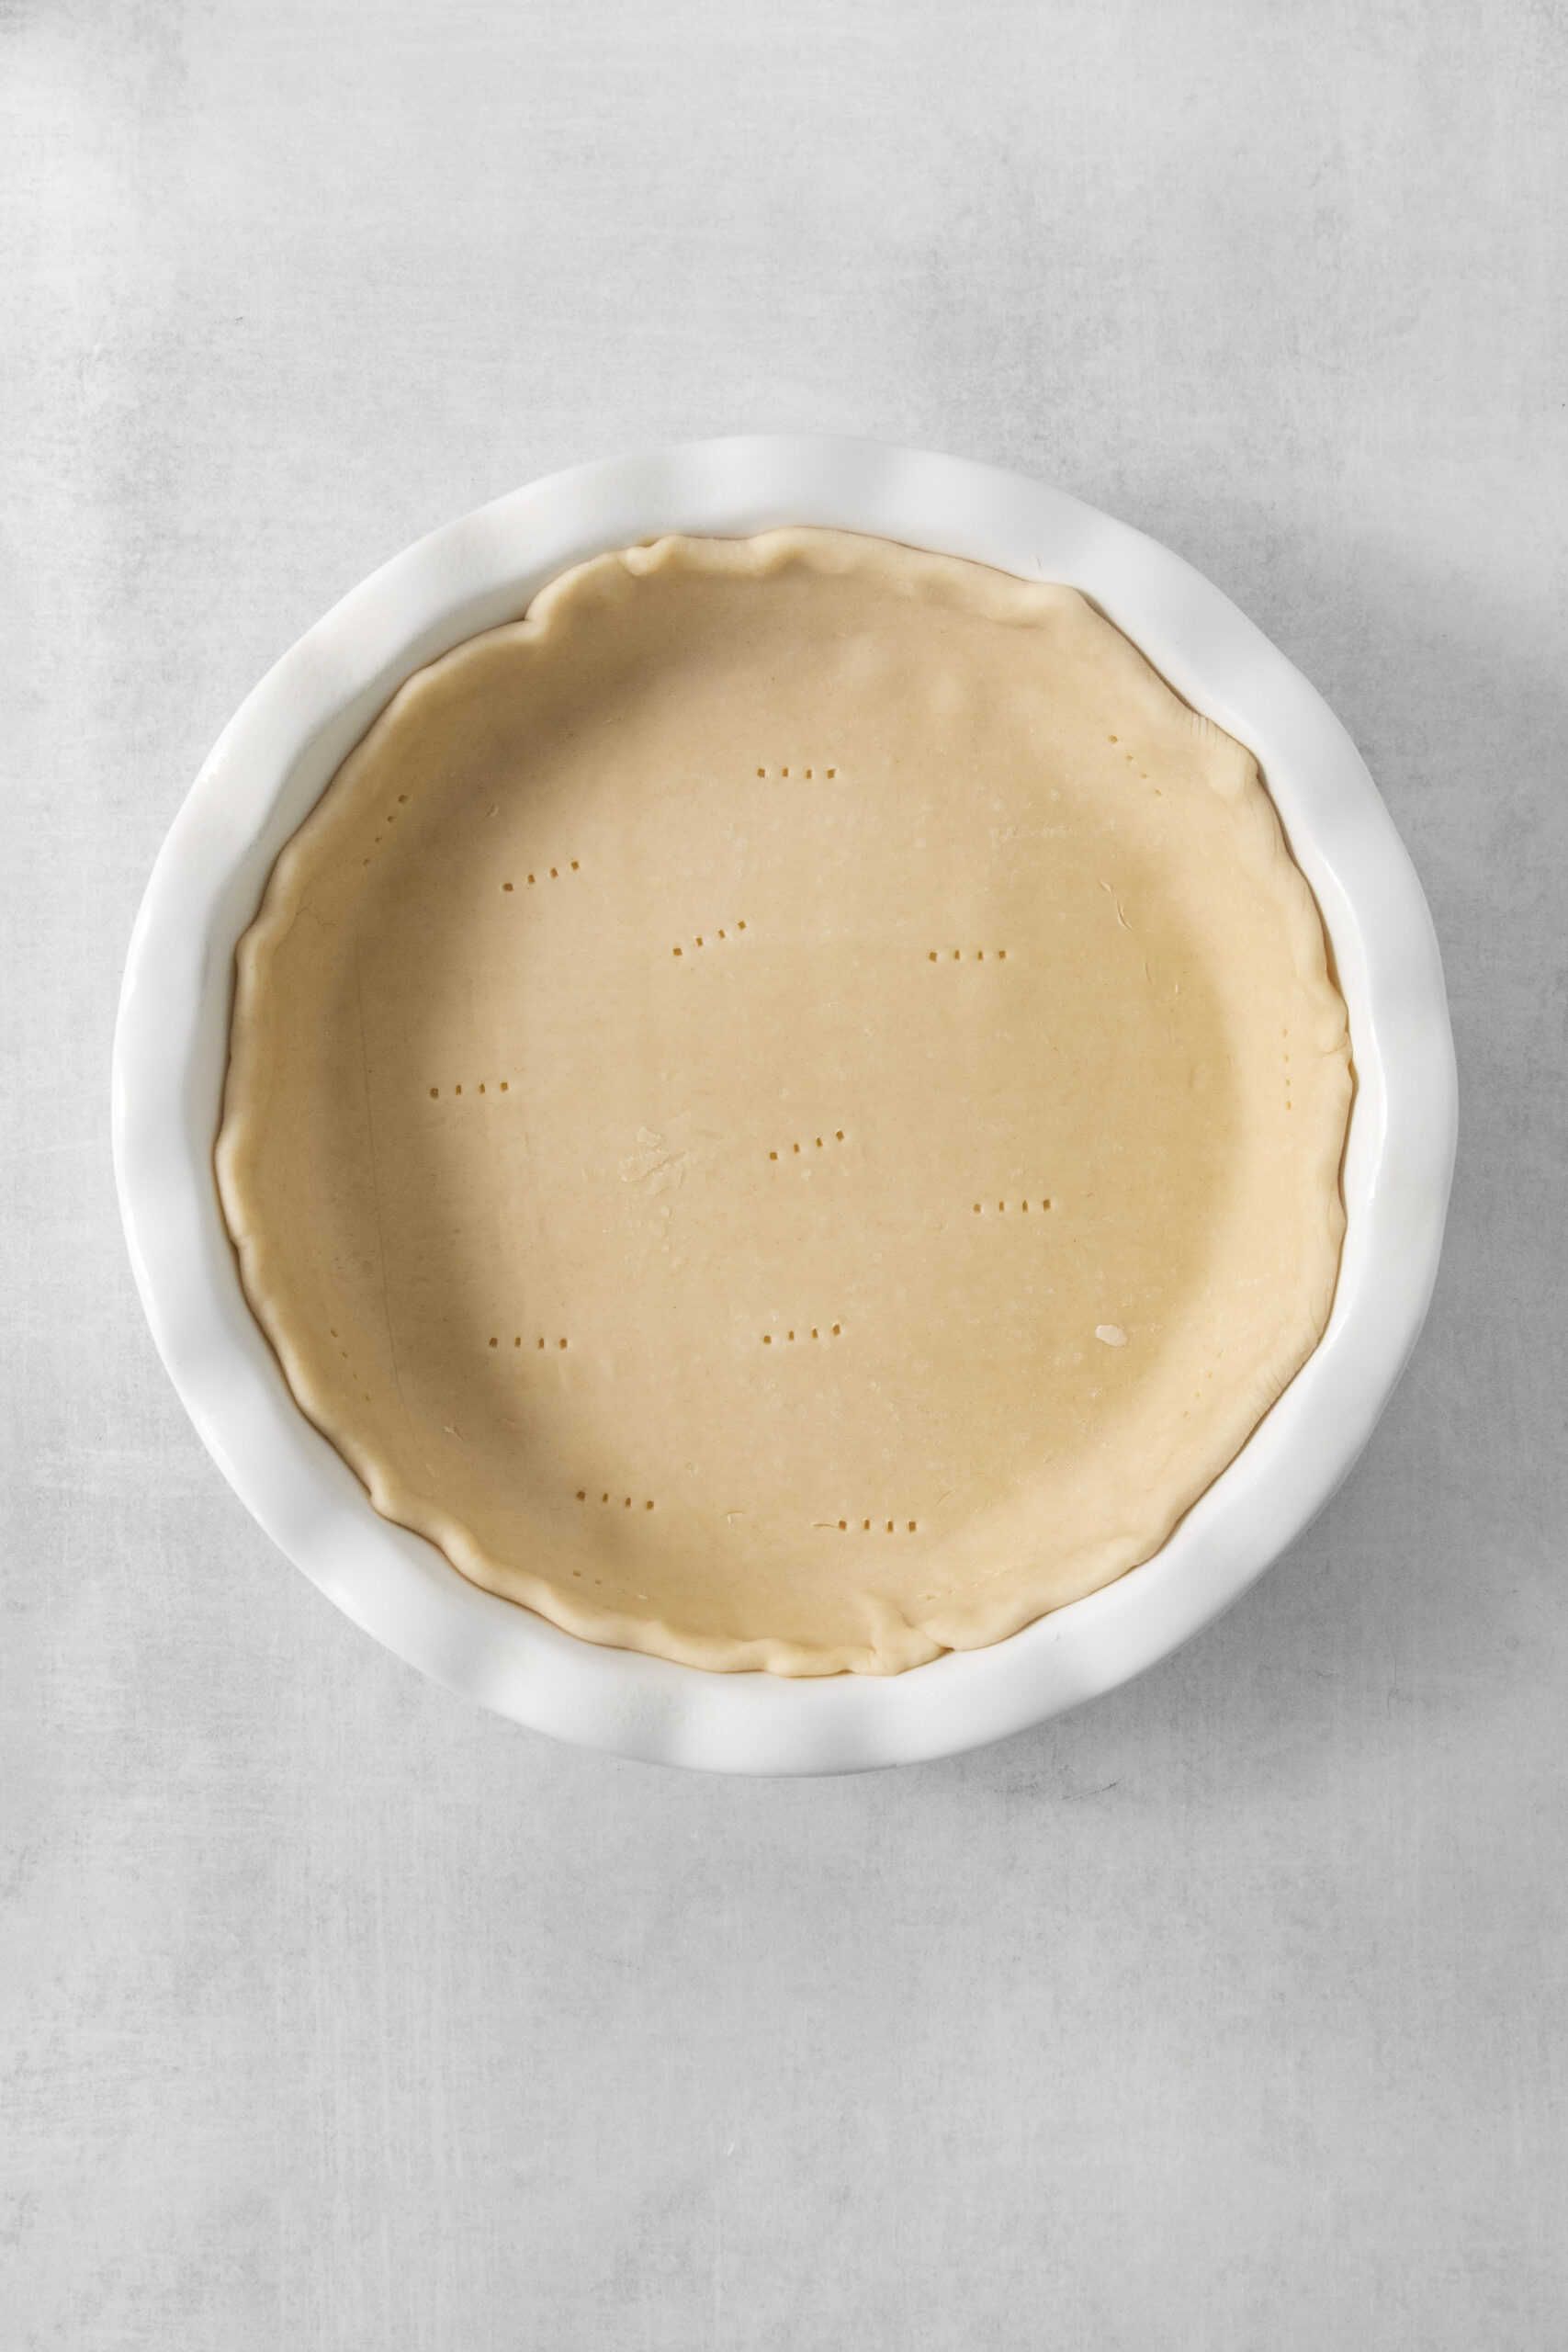 pie crust in a pie dish